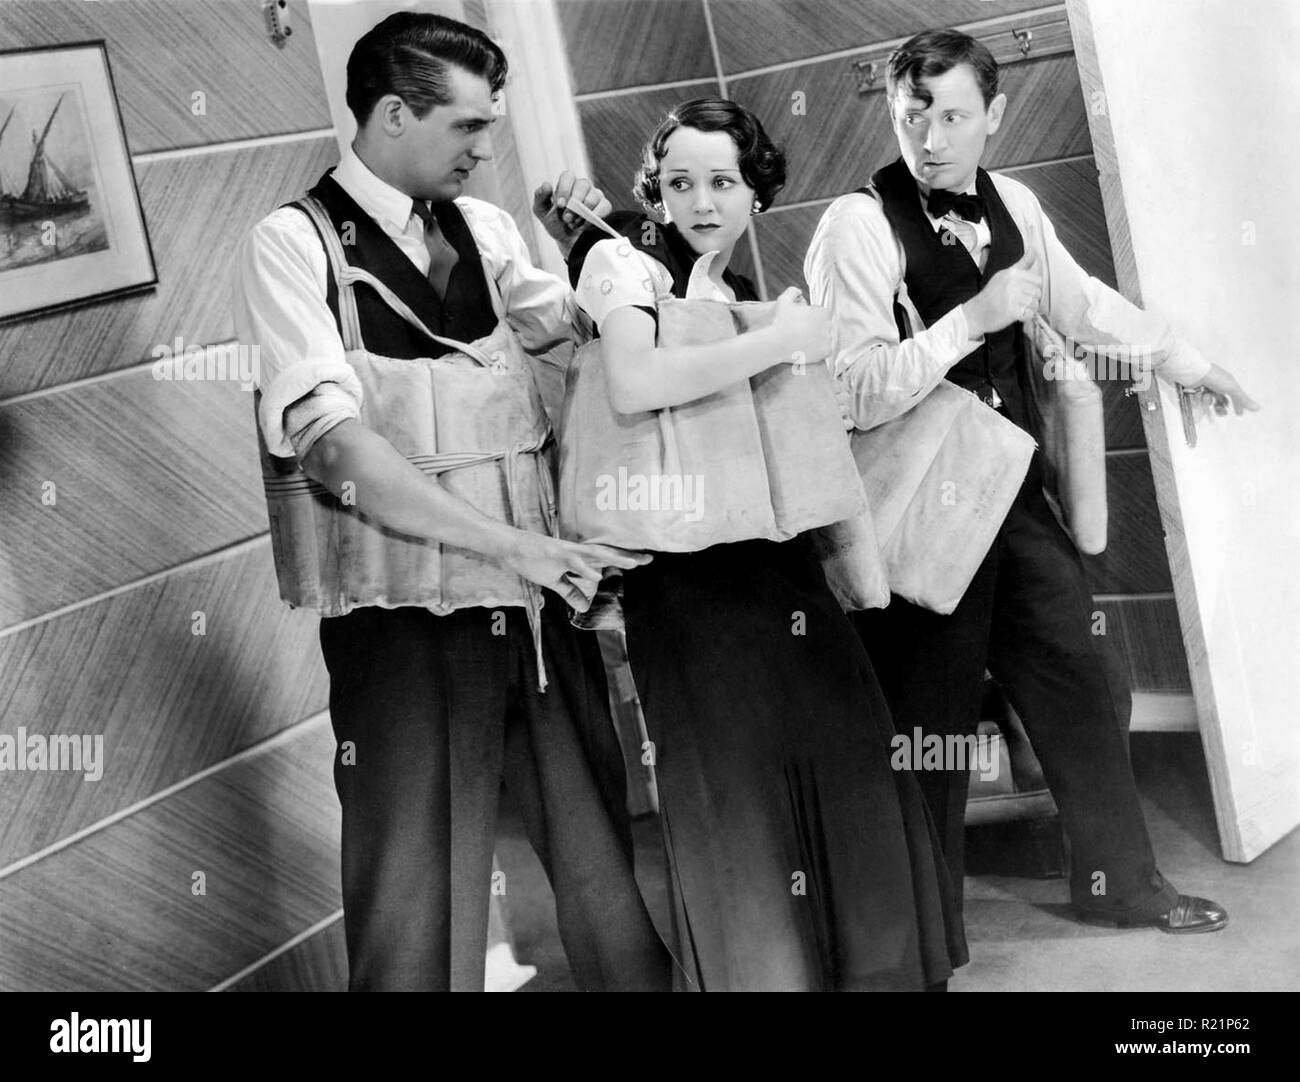 1933 amerikanischen Pre-Code drama Film von Louis J. Gasnier und Max Marcin gerichtet, und starring Cary Grant und Benita Hume. Quelle: Hollywood Foto Archiv/MediaPunch Stockfoto